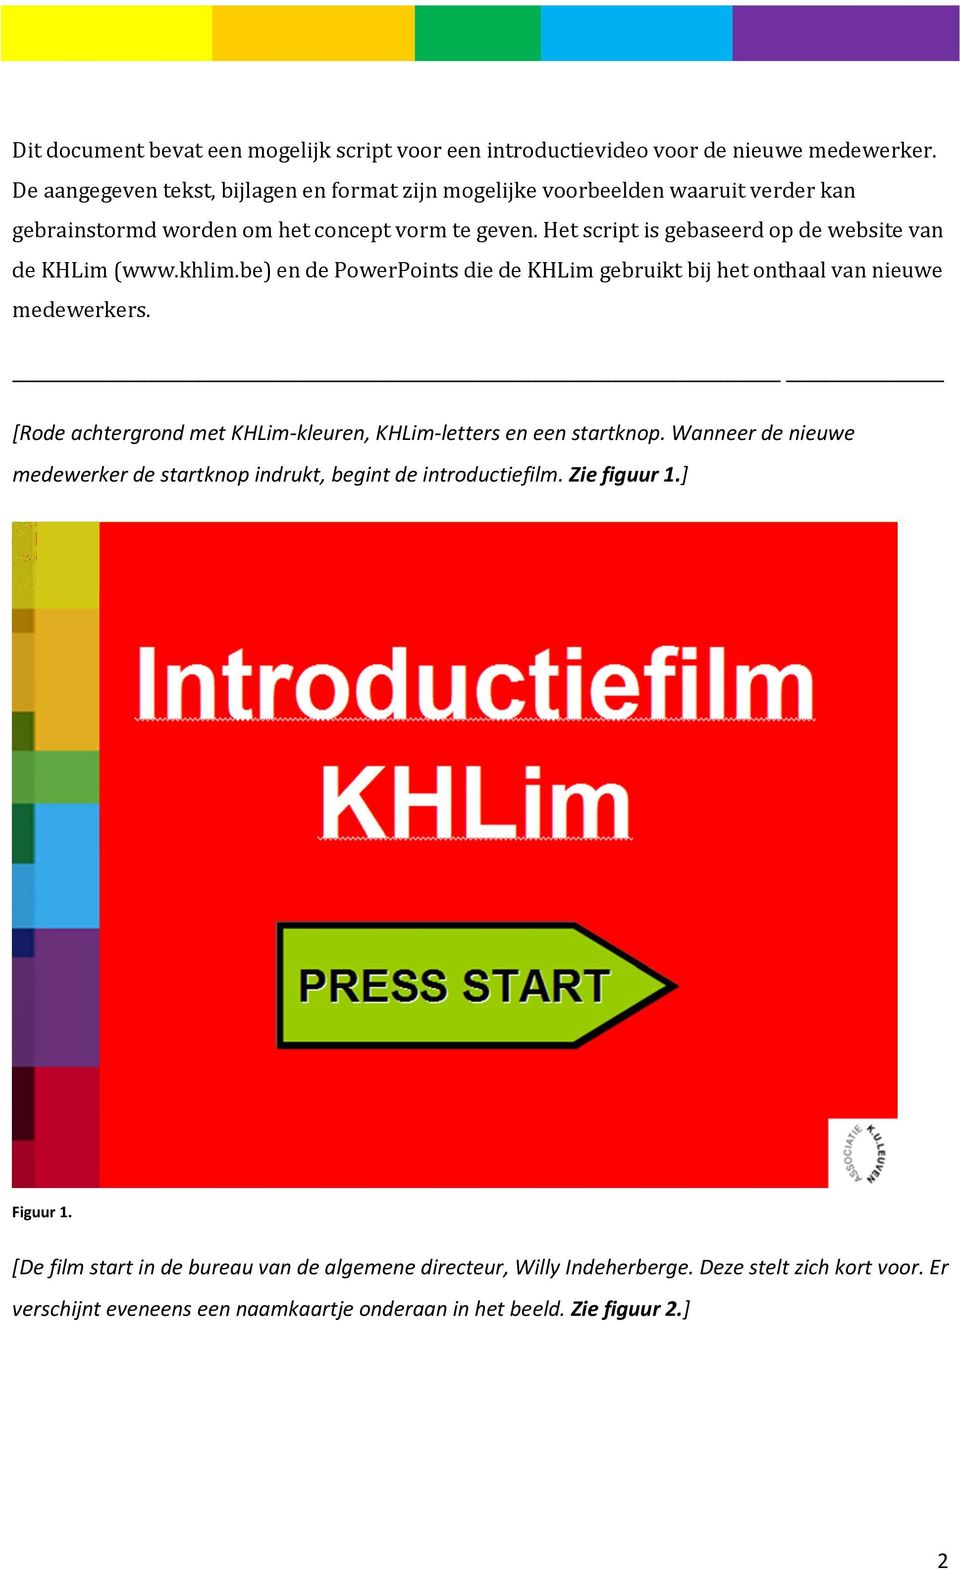 Het script is gebaseerd op de website van de KHLim (www.khlim.be) en de PowerPoints die de KHLim gebruikt bij het onthaal van nieuwe medewerkers.